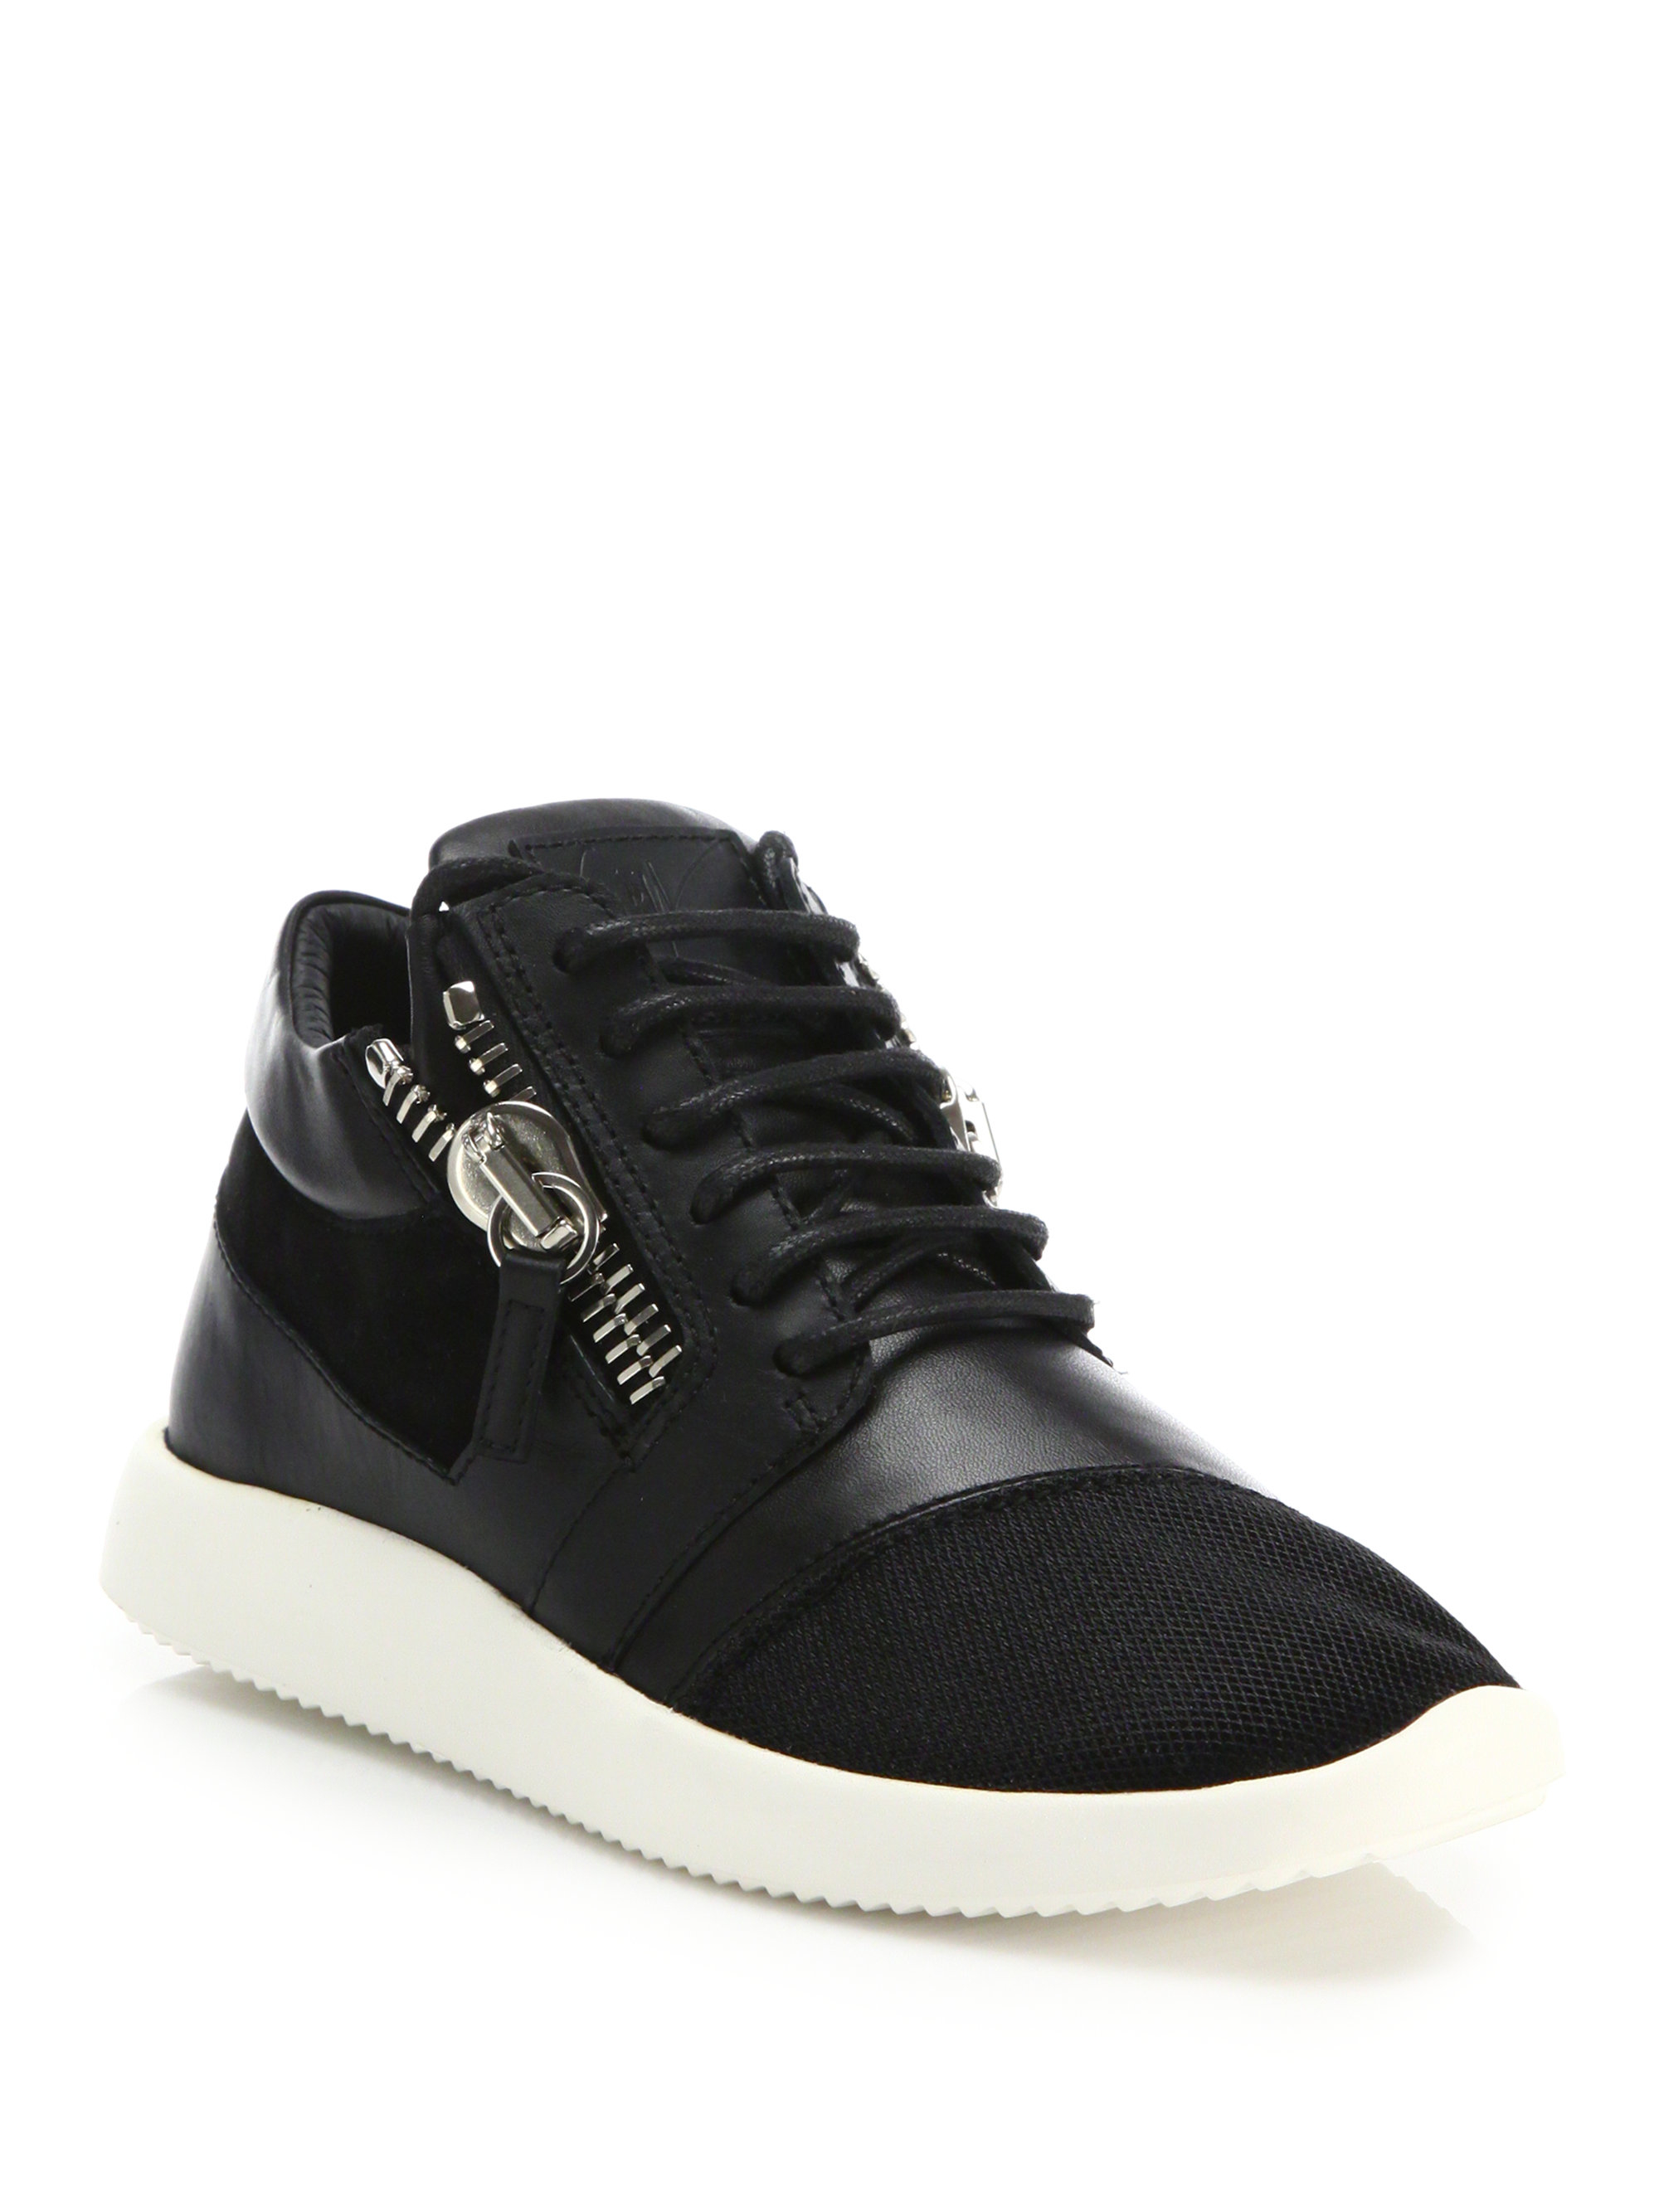 Giuseppe zanotti Leather & Mesh Side-zip Sneakers in Black | Lyst